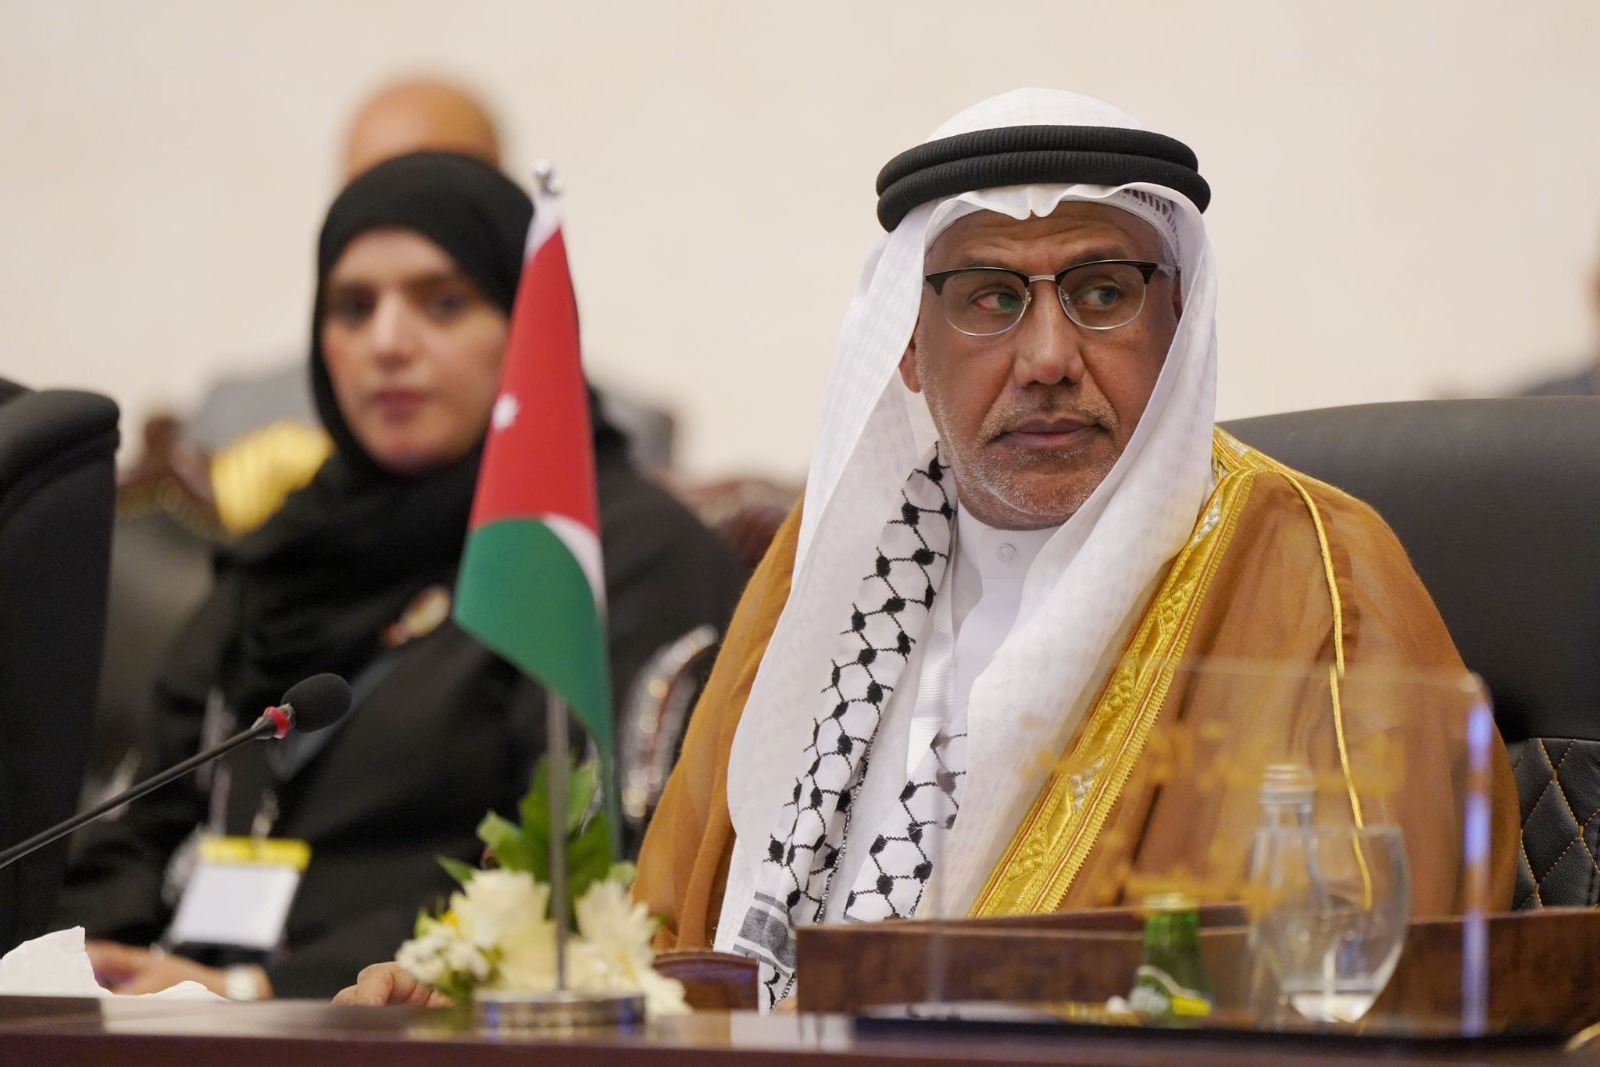 أحمد قراطة: دعم القضية الفلسطينية أولوية كبرى في السياسة البحرينية وتدشين حملة لإغاثة المتأثرين من الحرب في قطاع غزة
 منذ أقل من دقيقتين